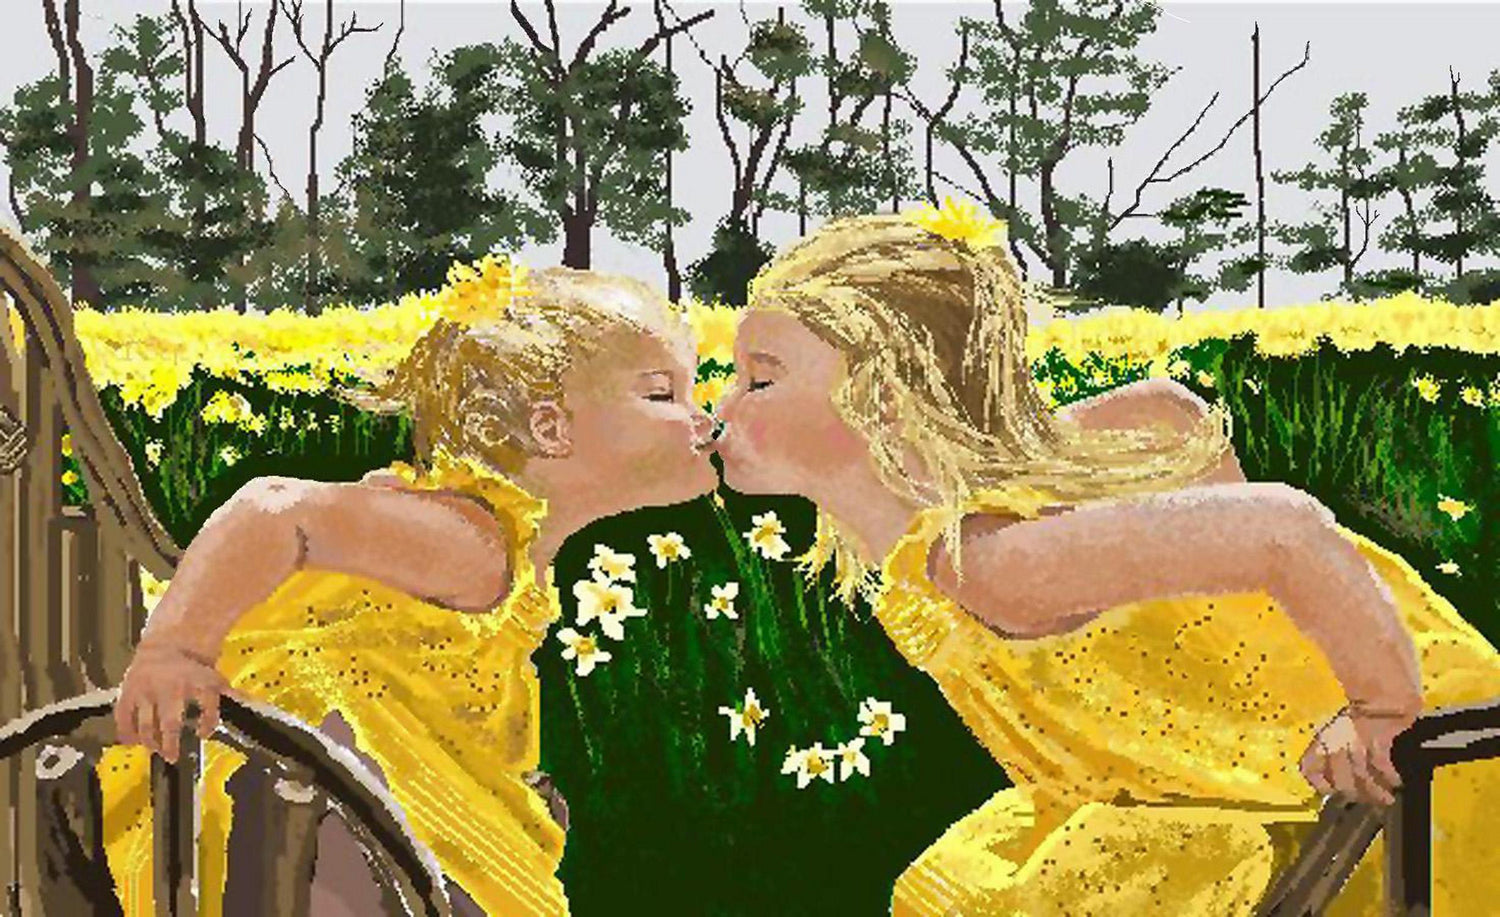 Sisters by Carole K. Boyd